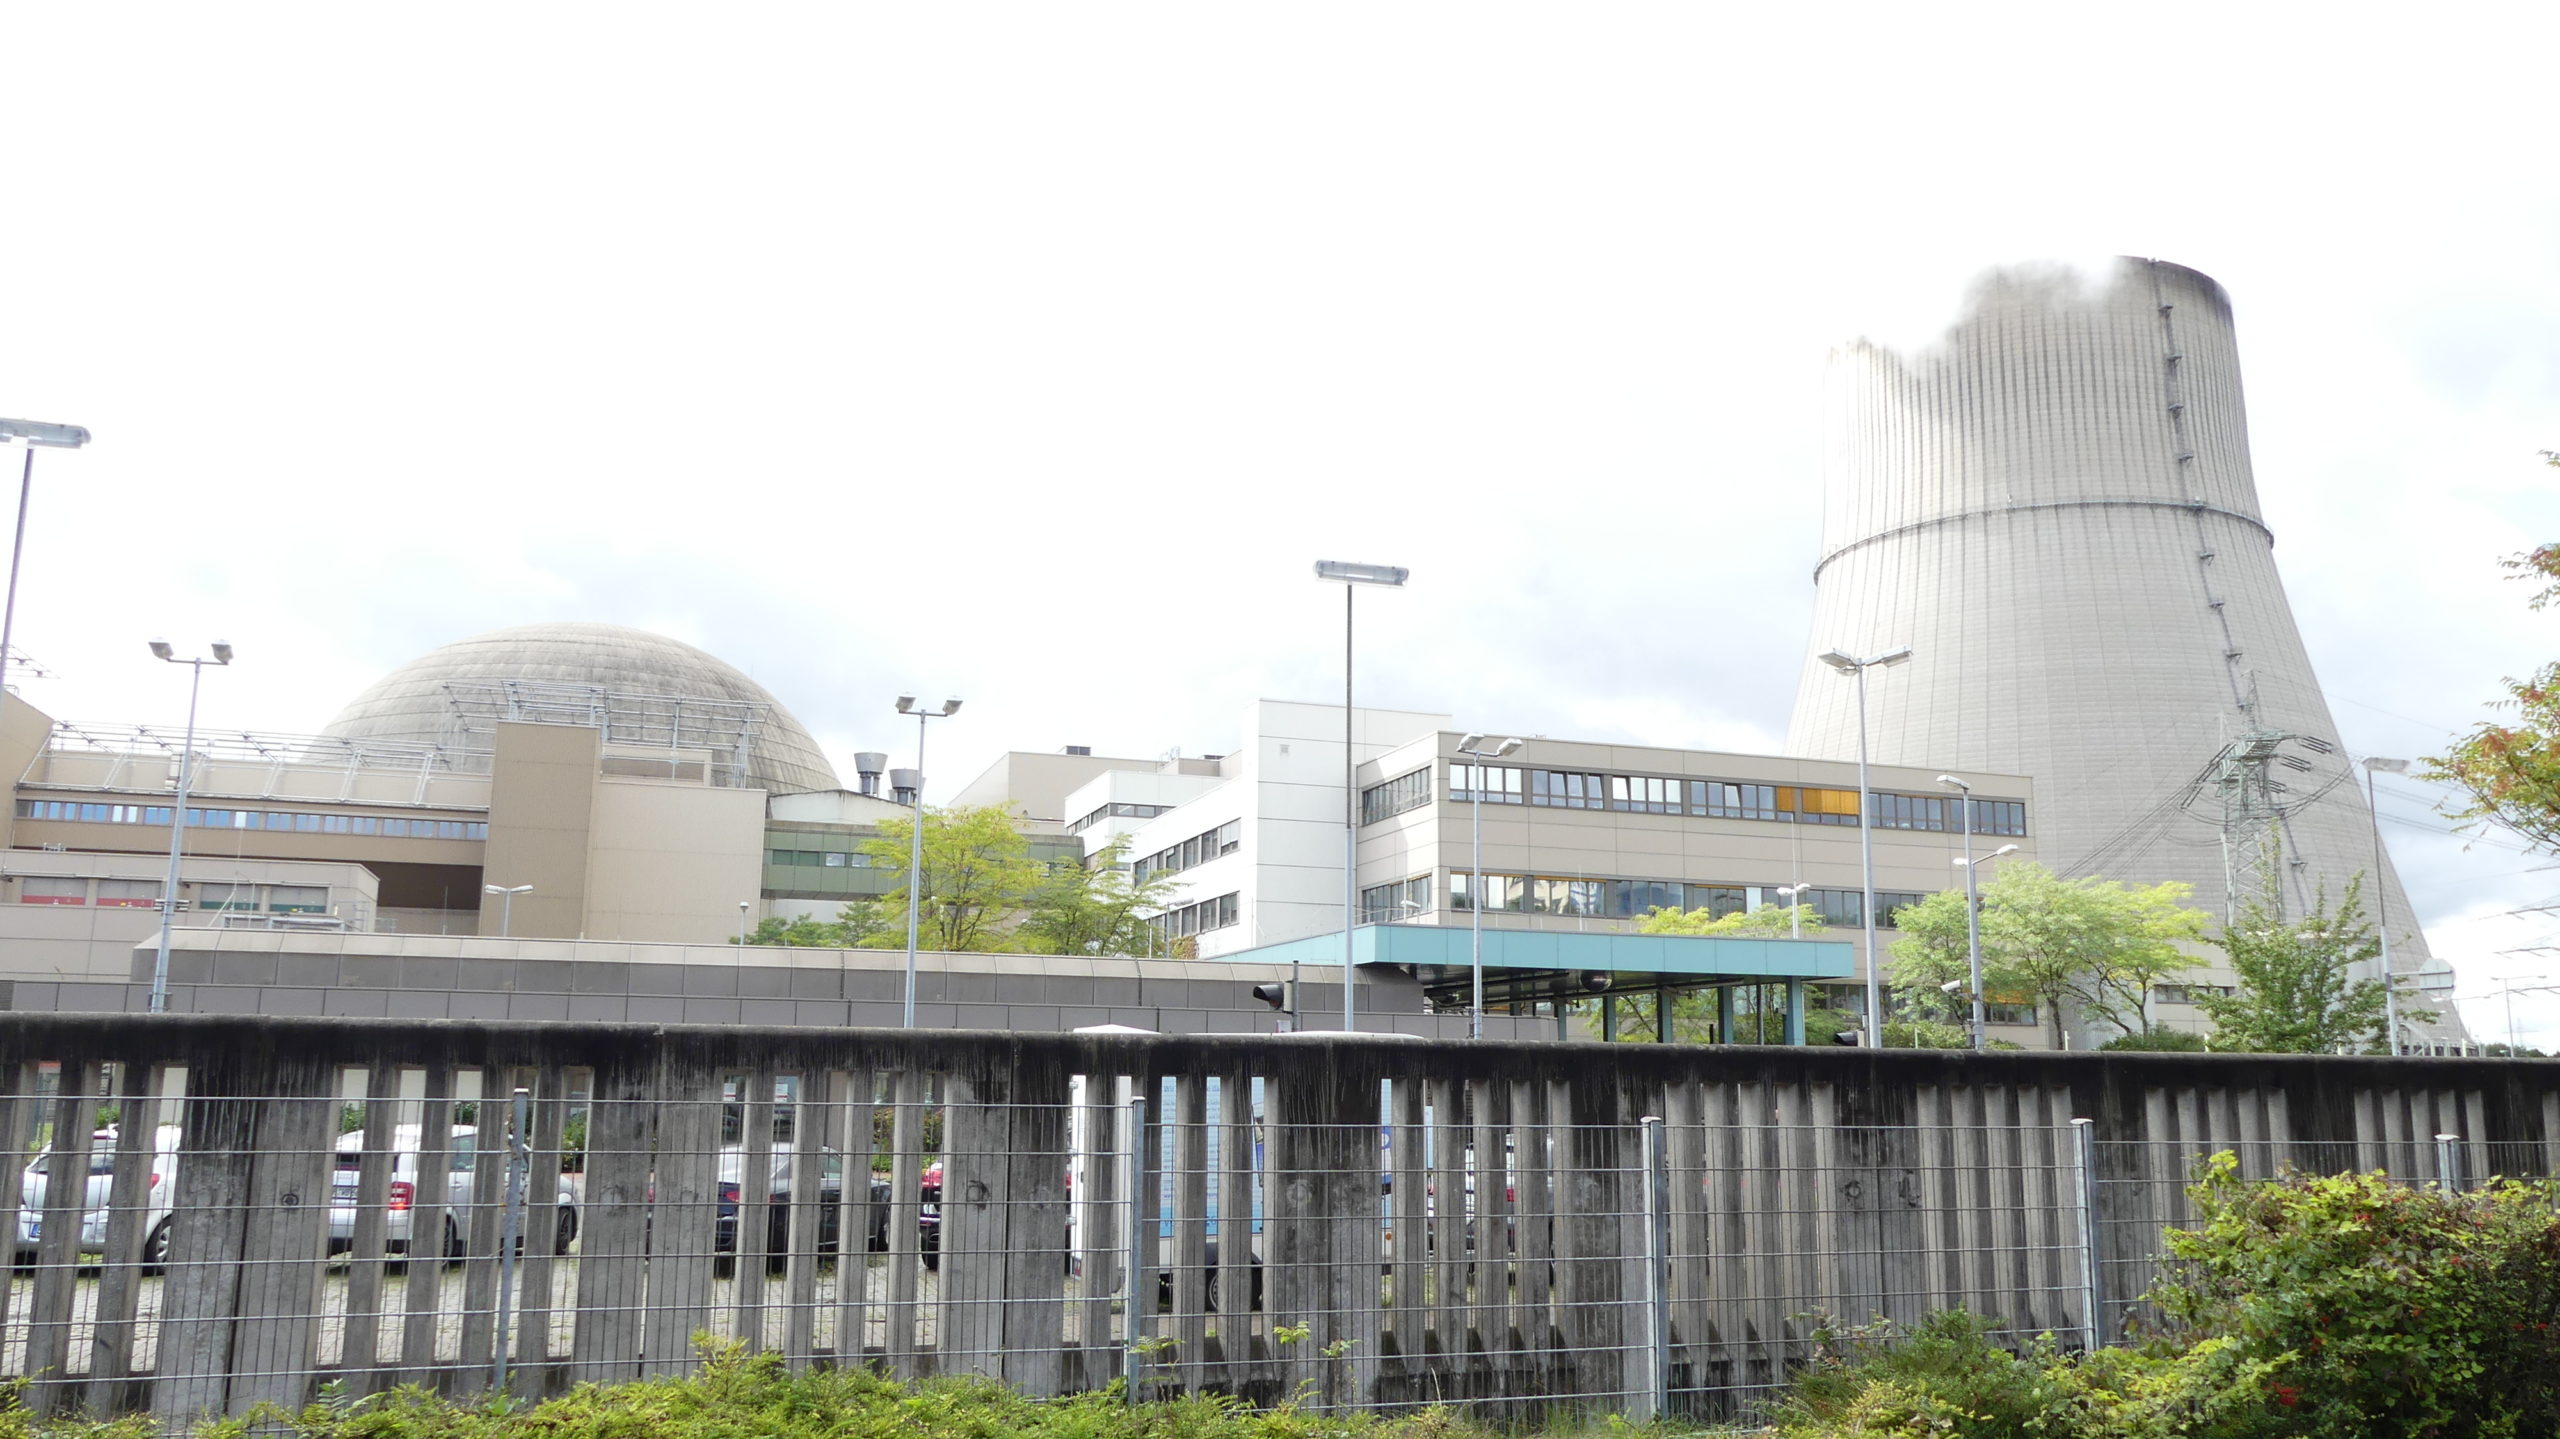 Atomrisiko runterfahren: AKW Emsland endgültig abschalten – Protest am 21. und am 28/29. Januar – CDU auf Atomkurs